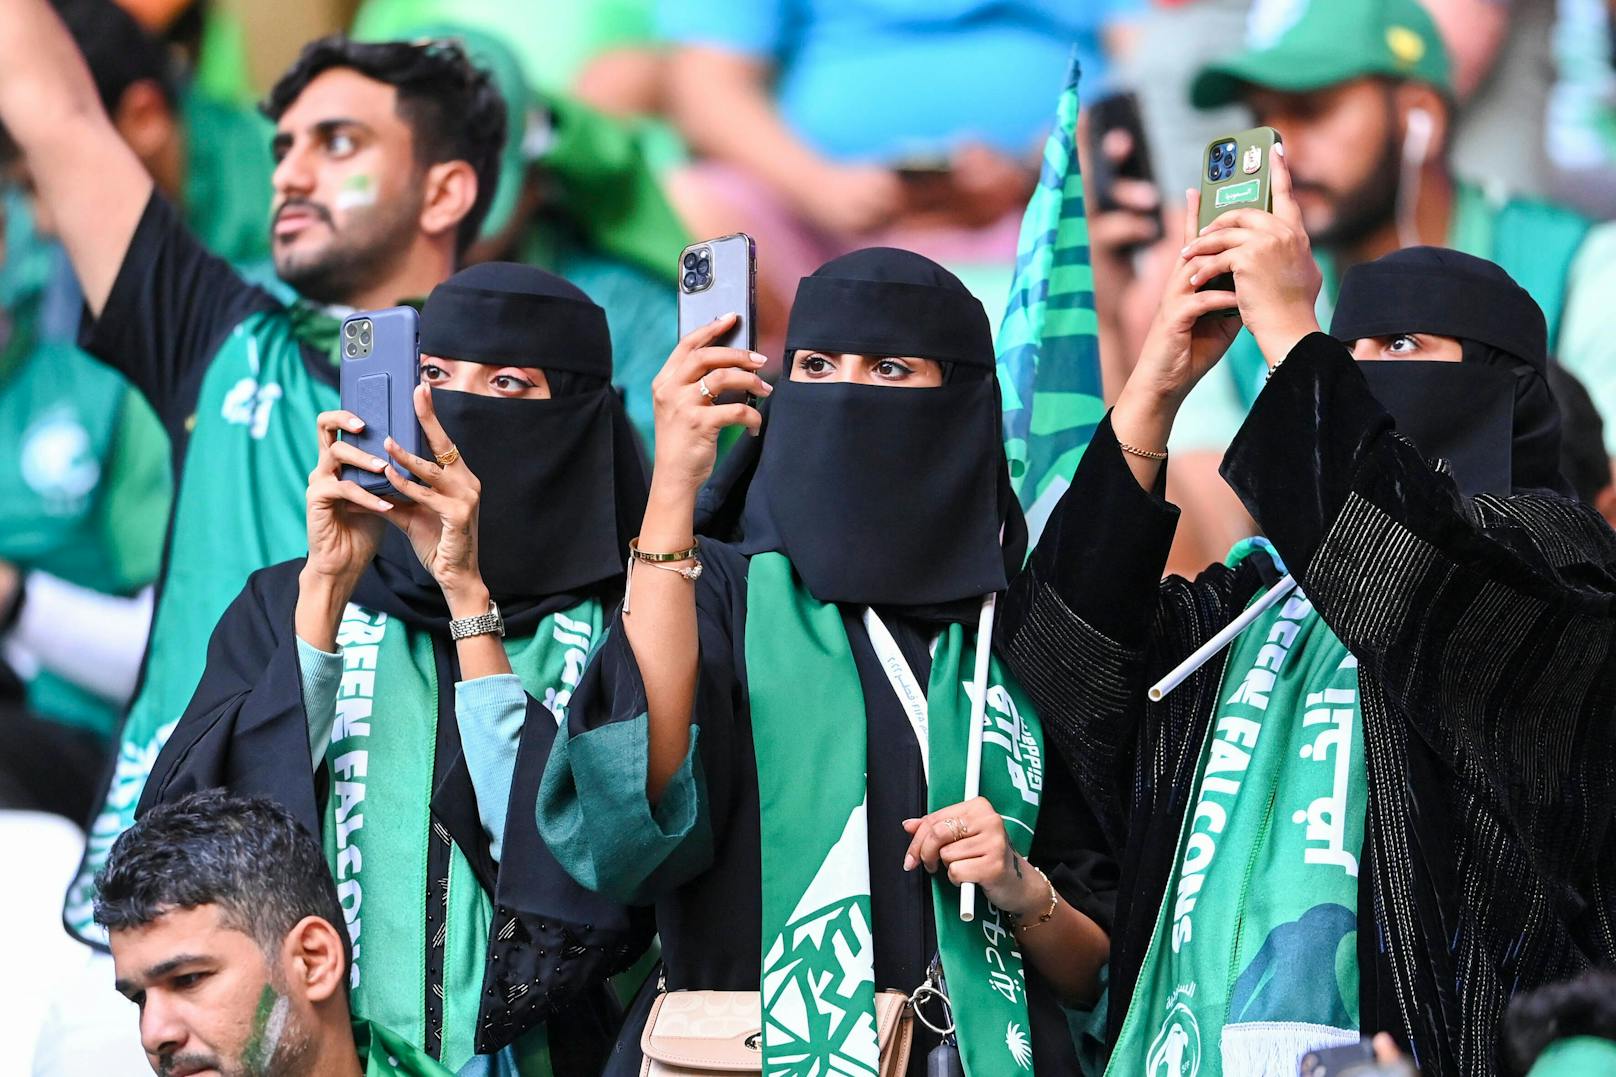 Entdeckt Saudi-Arabien jetzt den Frauenfußball?